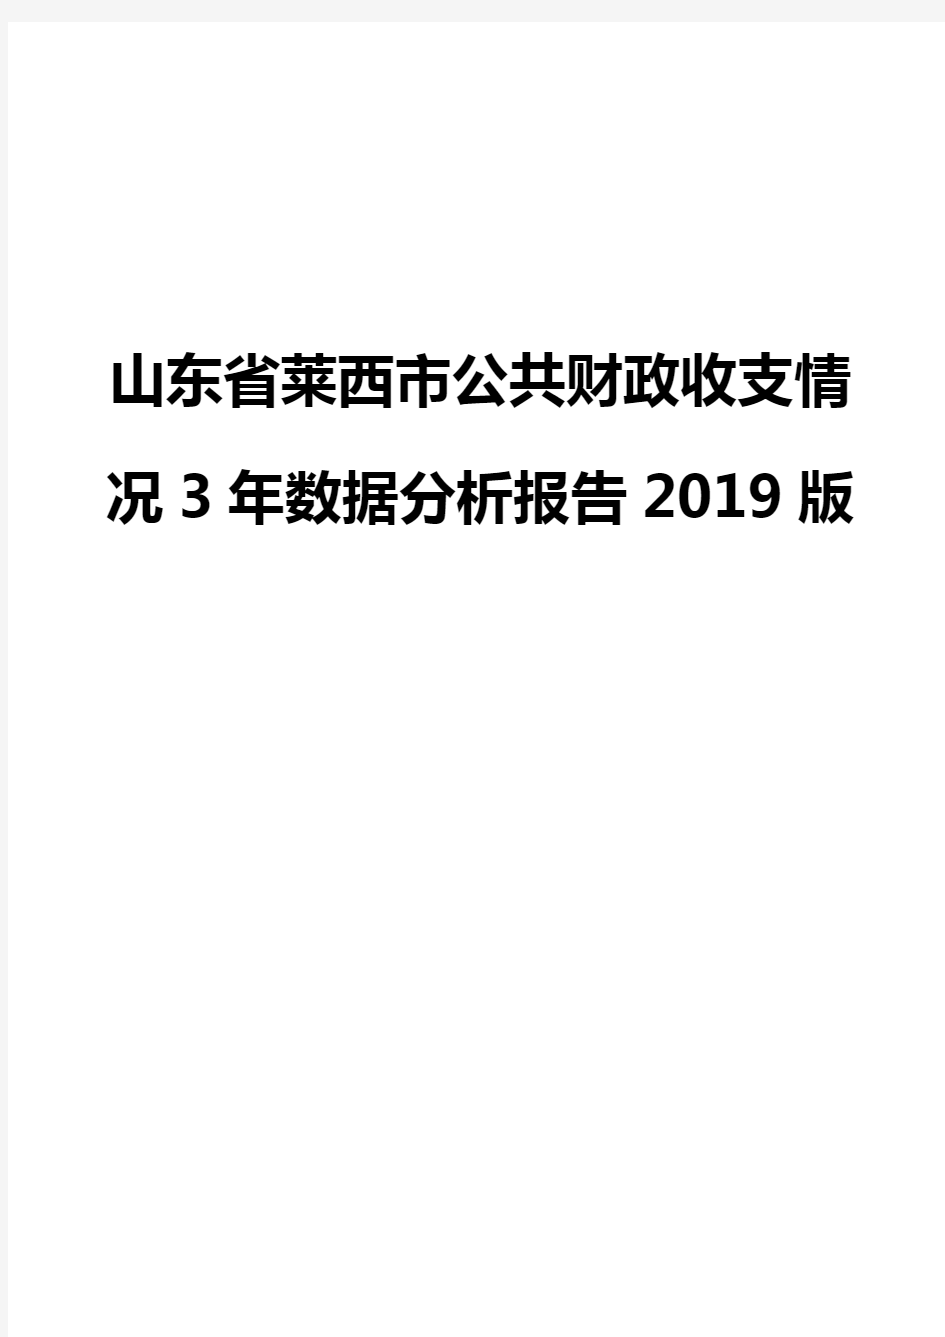 山东省莱西市公共财政收支情况3年数据分析报告2019版